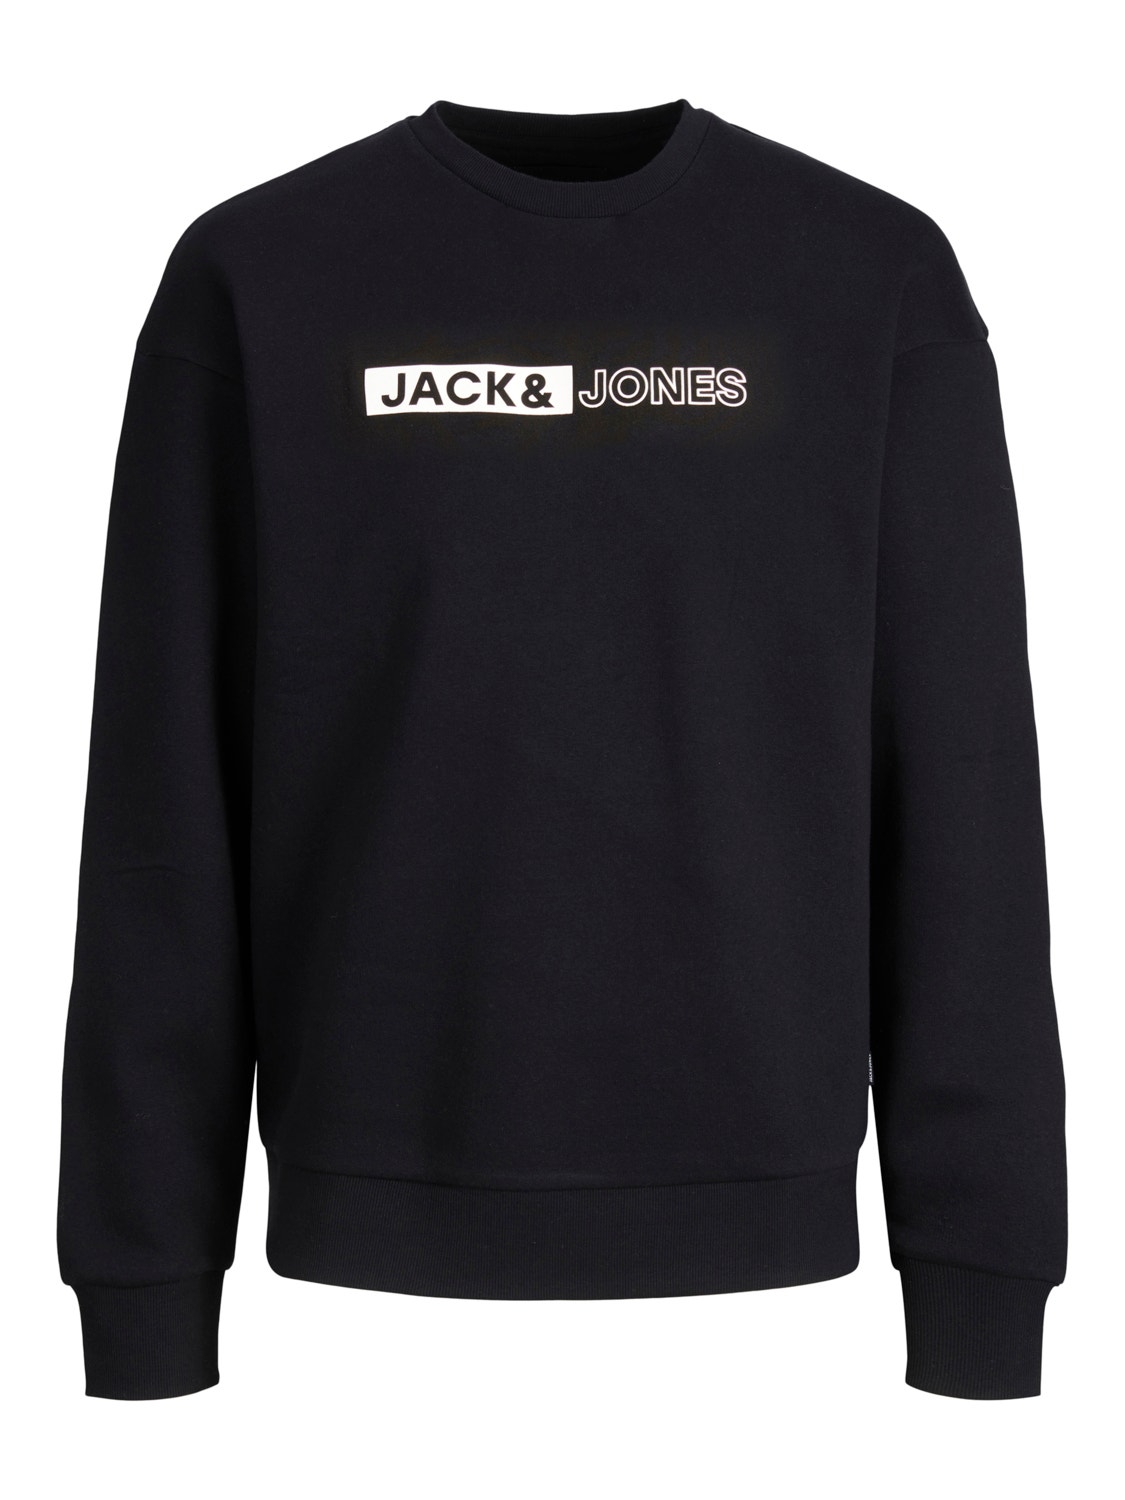 Jack & Jones Logo Crew neck Sweatshirt -Black - 12255067